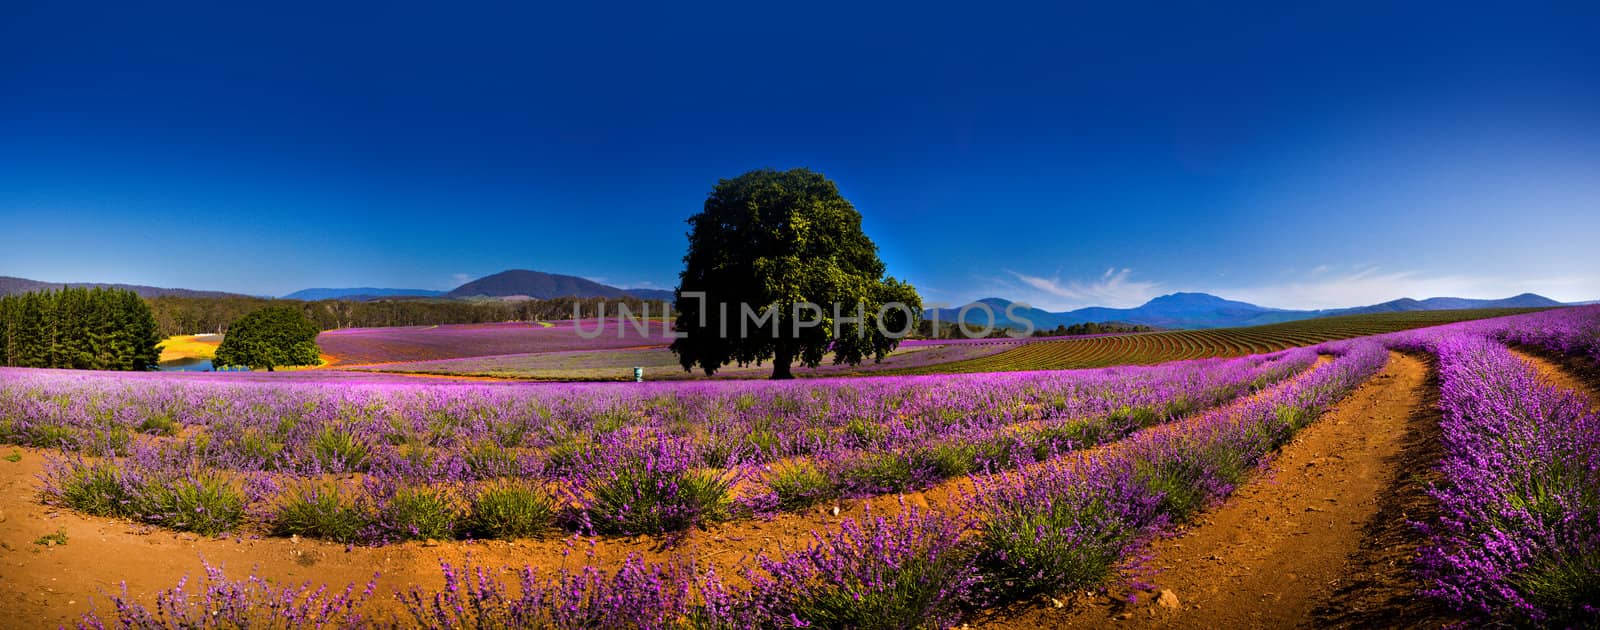 Rich purple lavender fields by jrstock